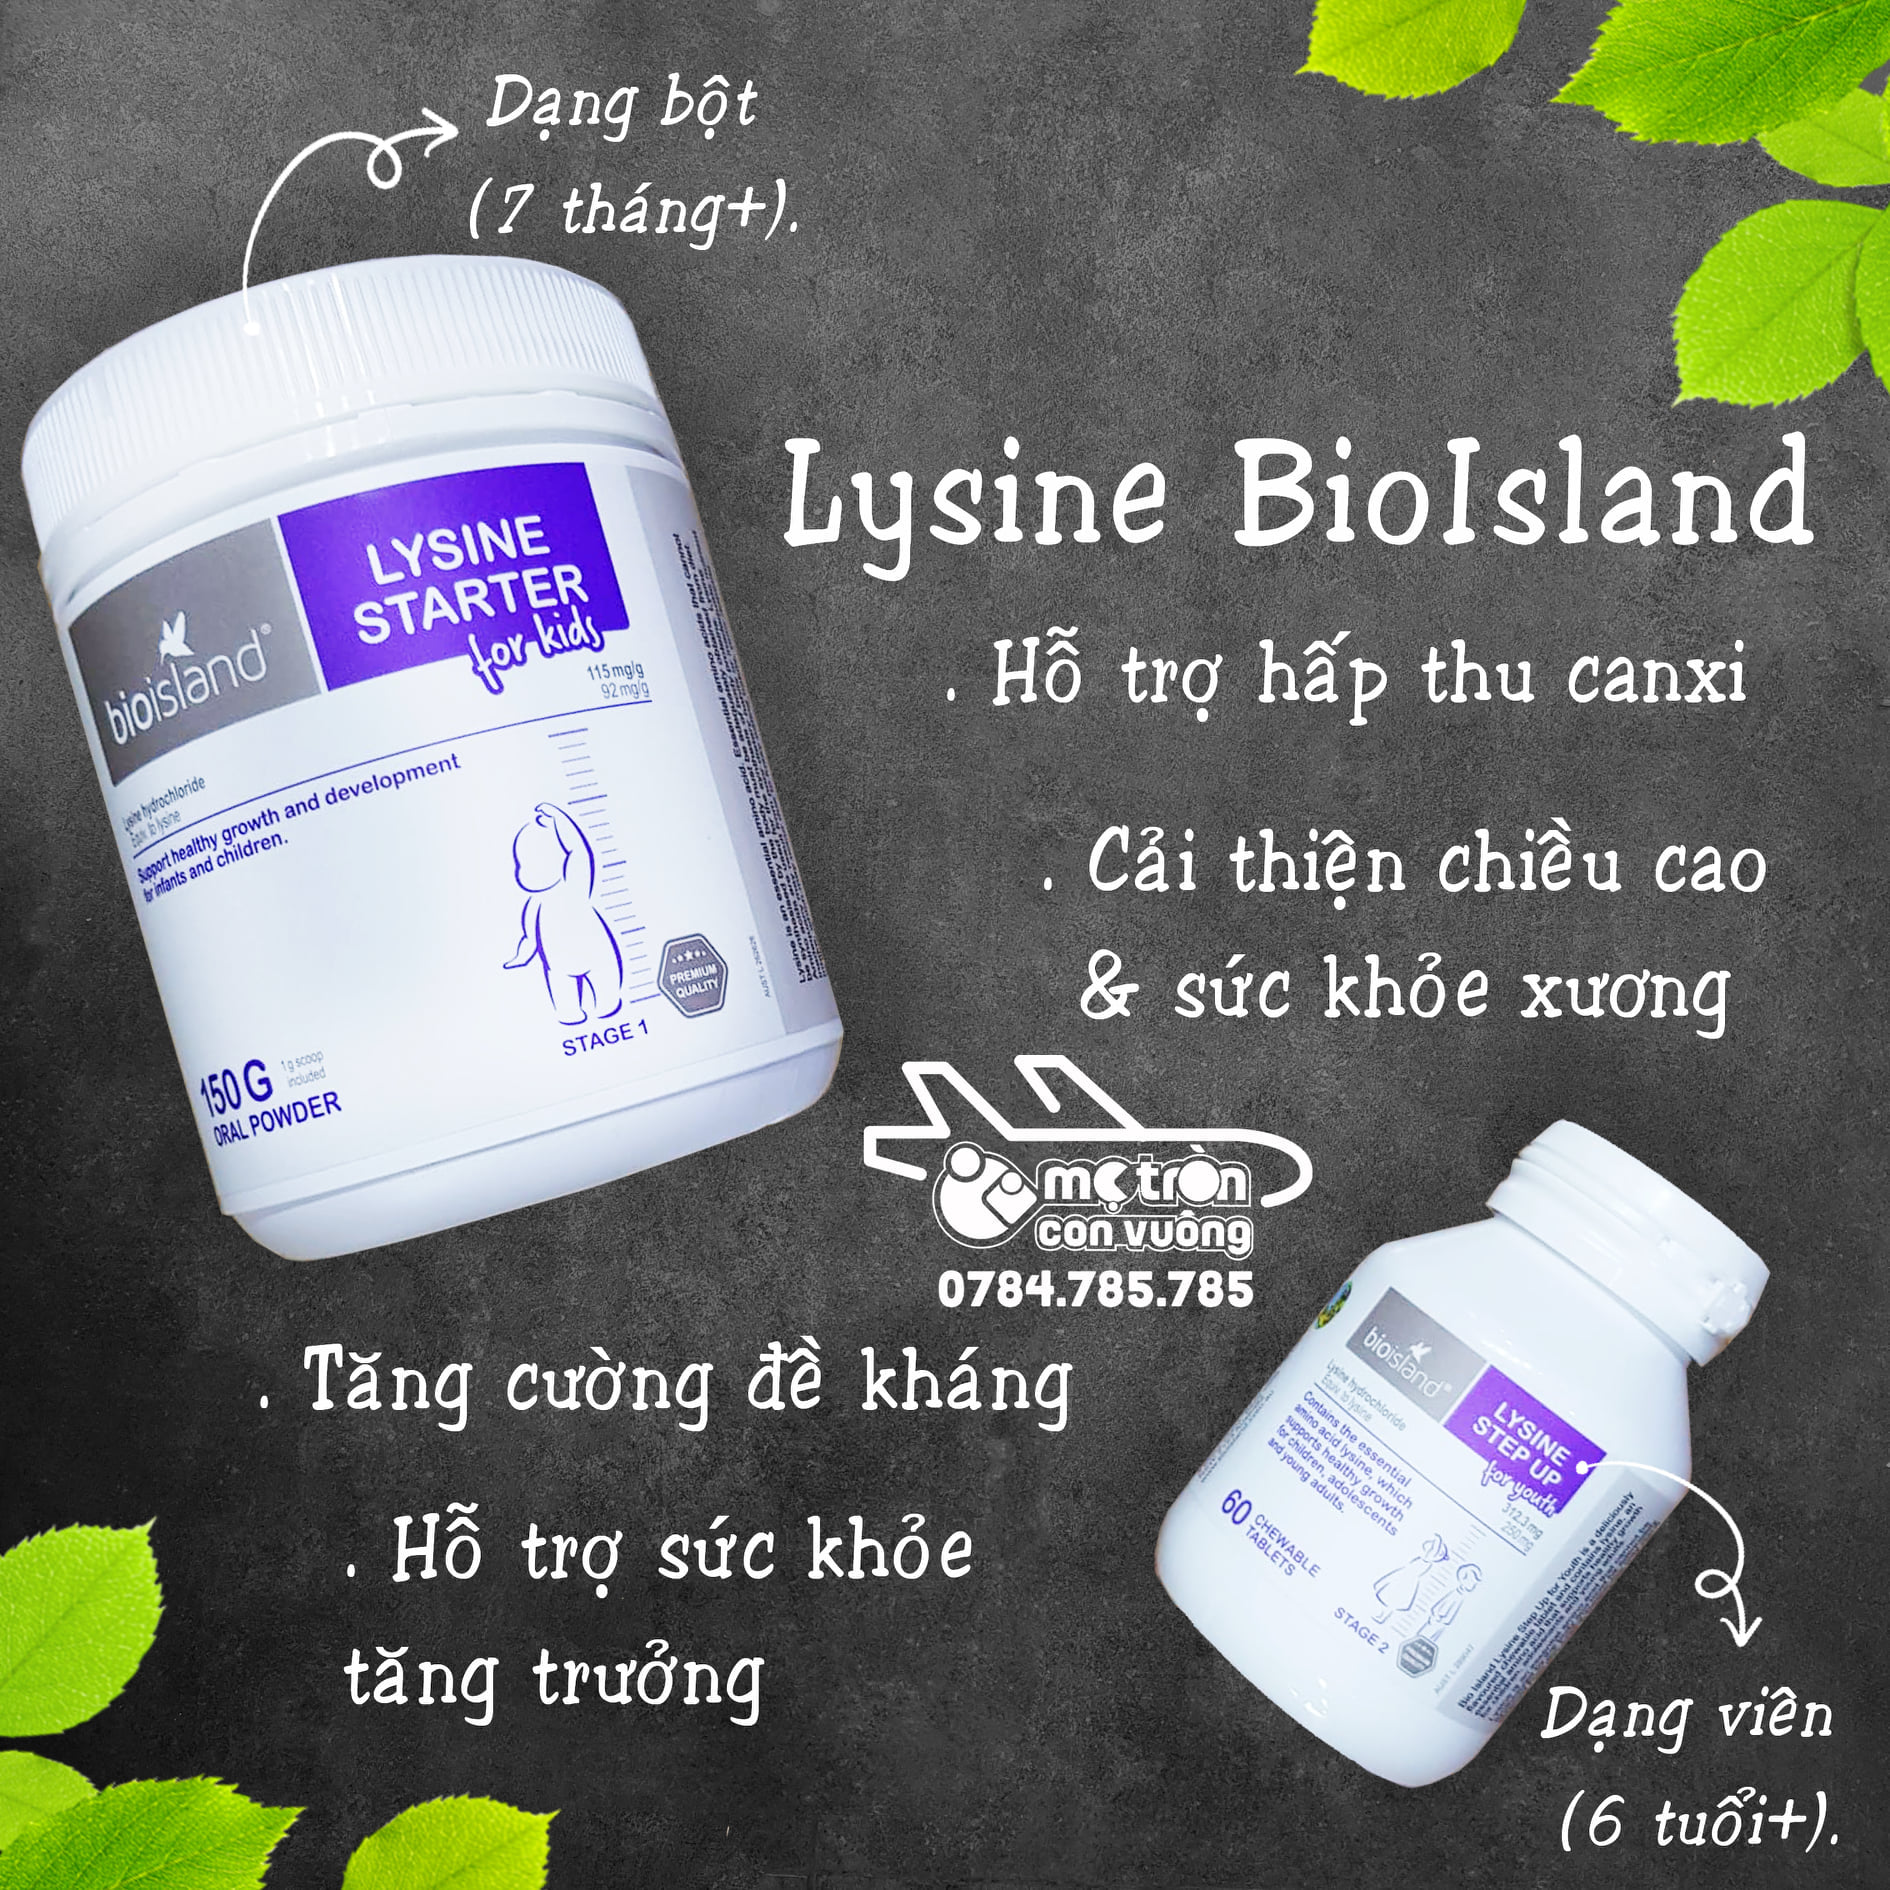 Bioisland Lysine có tốt không?